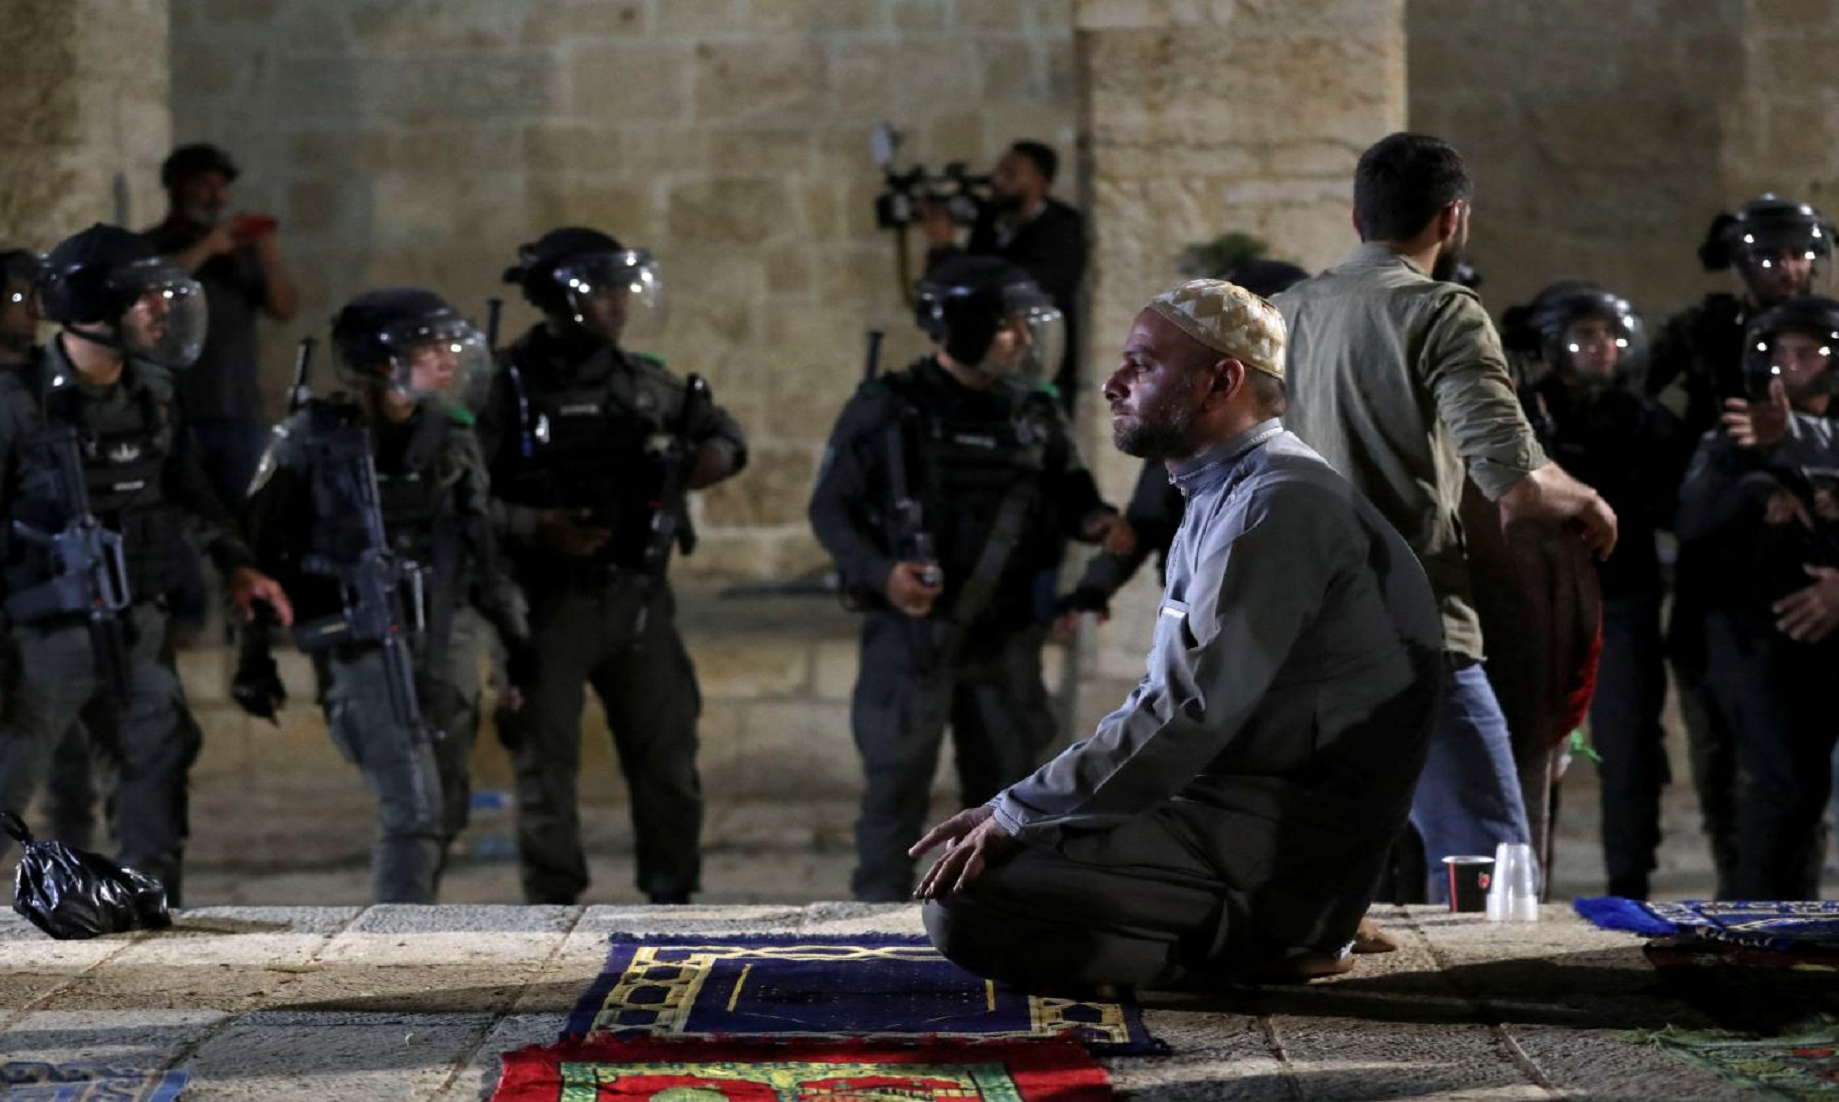 Iraq Condemns Israeli Forces’ Storming Of Al-Aqsa Mosque